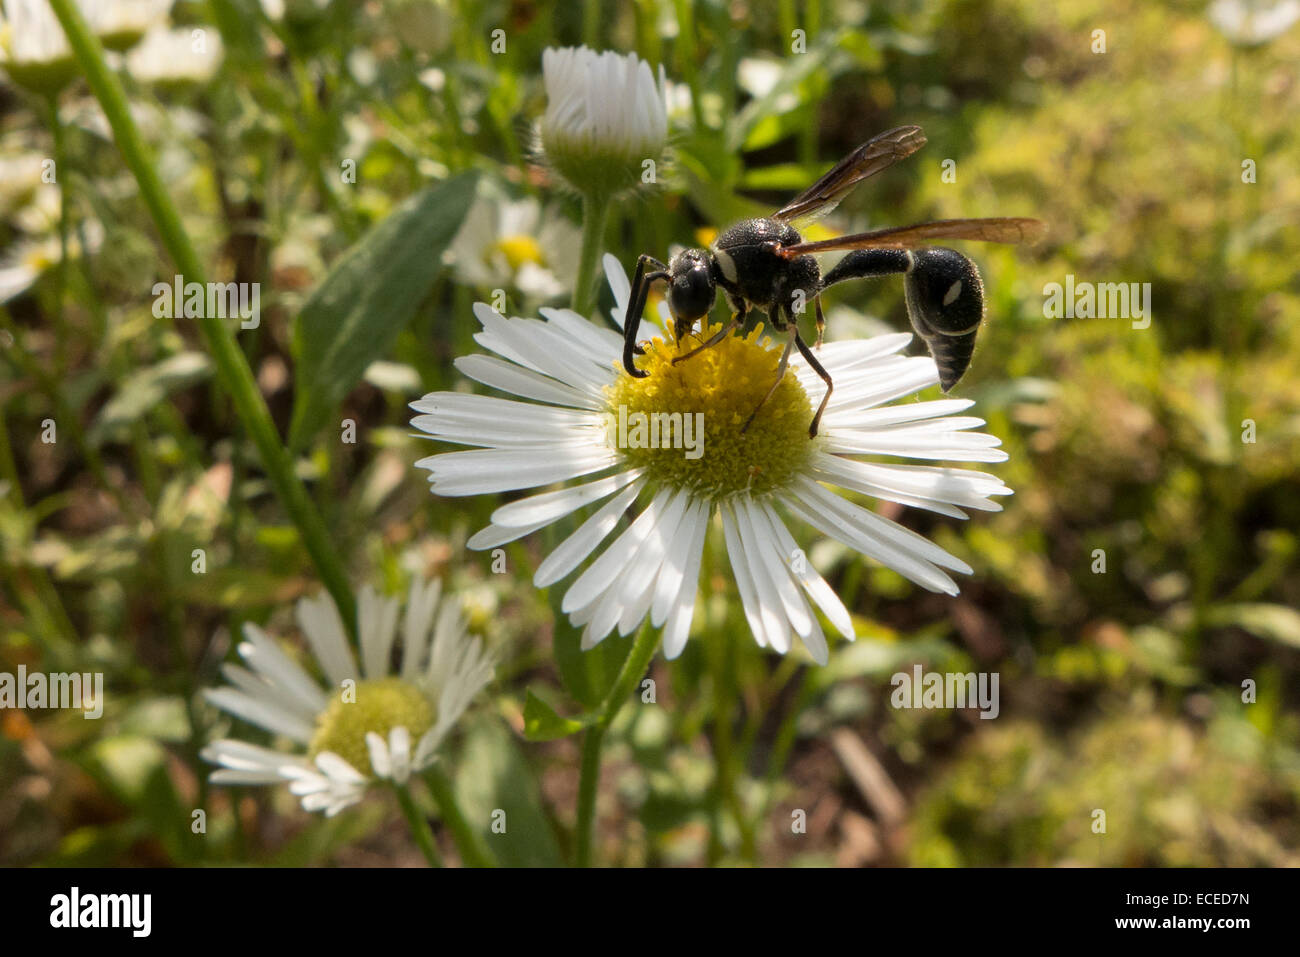 Wasp on daisy. Stock Photo